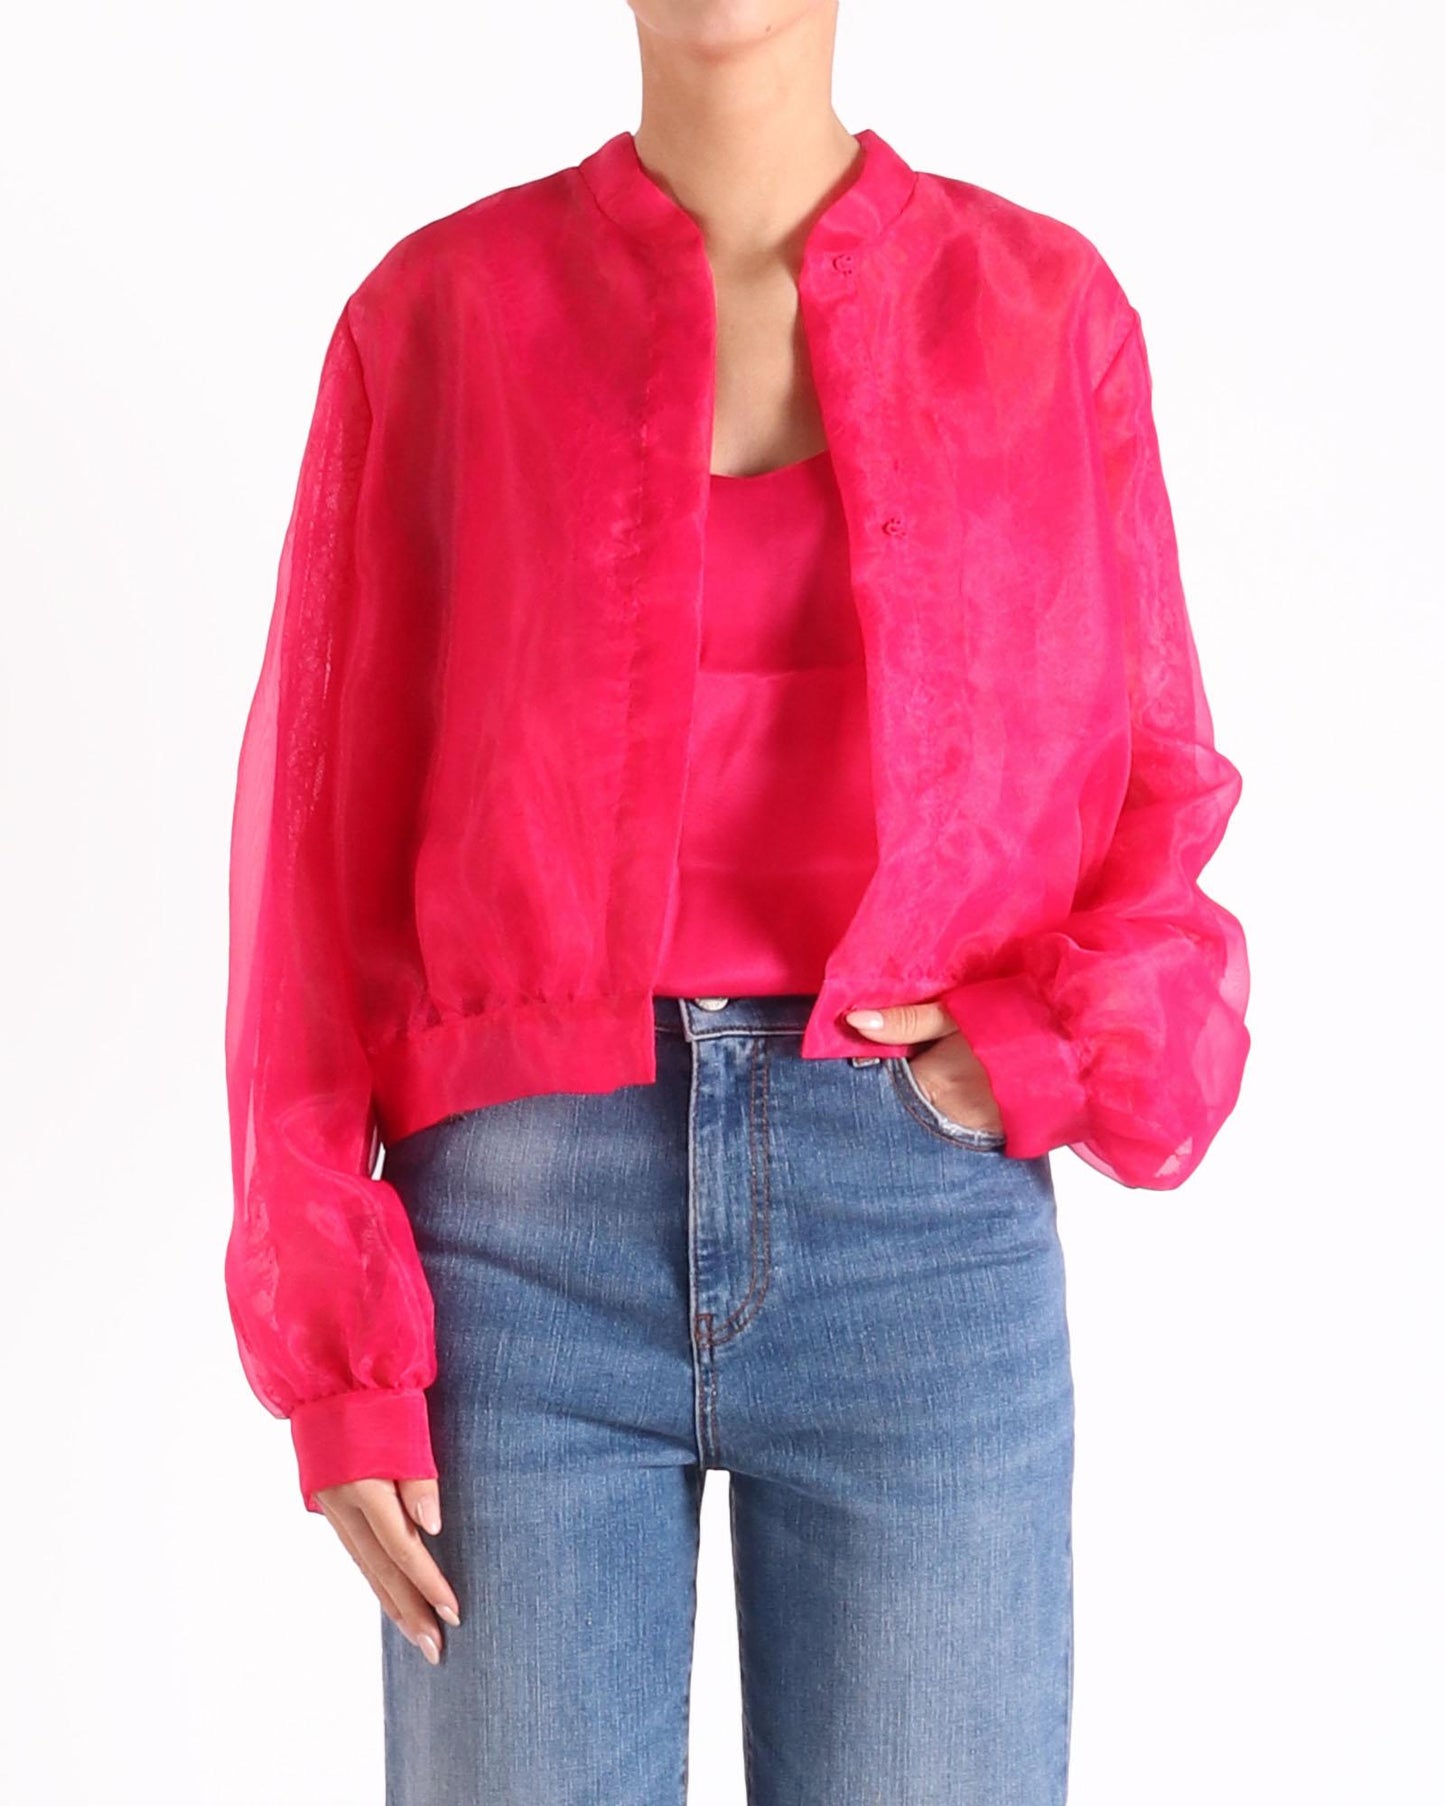 Twinset blouse in de kleur roze